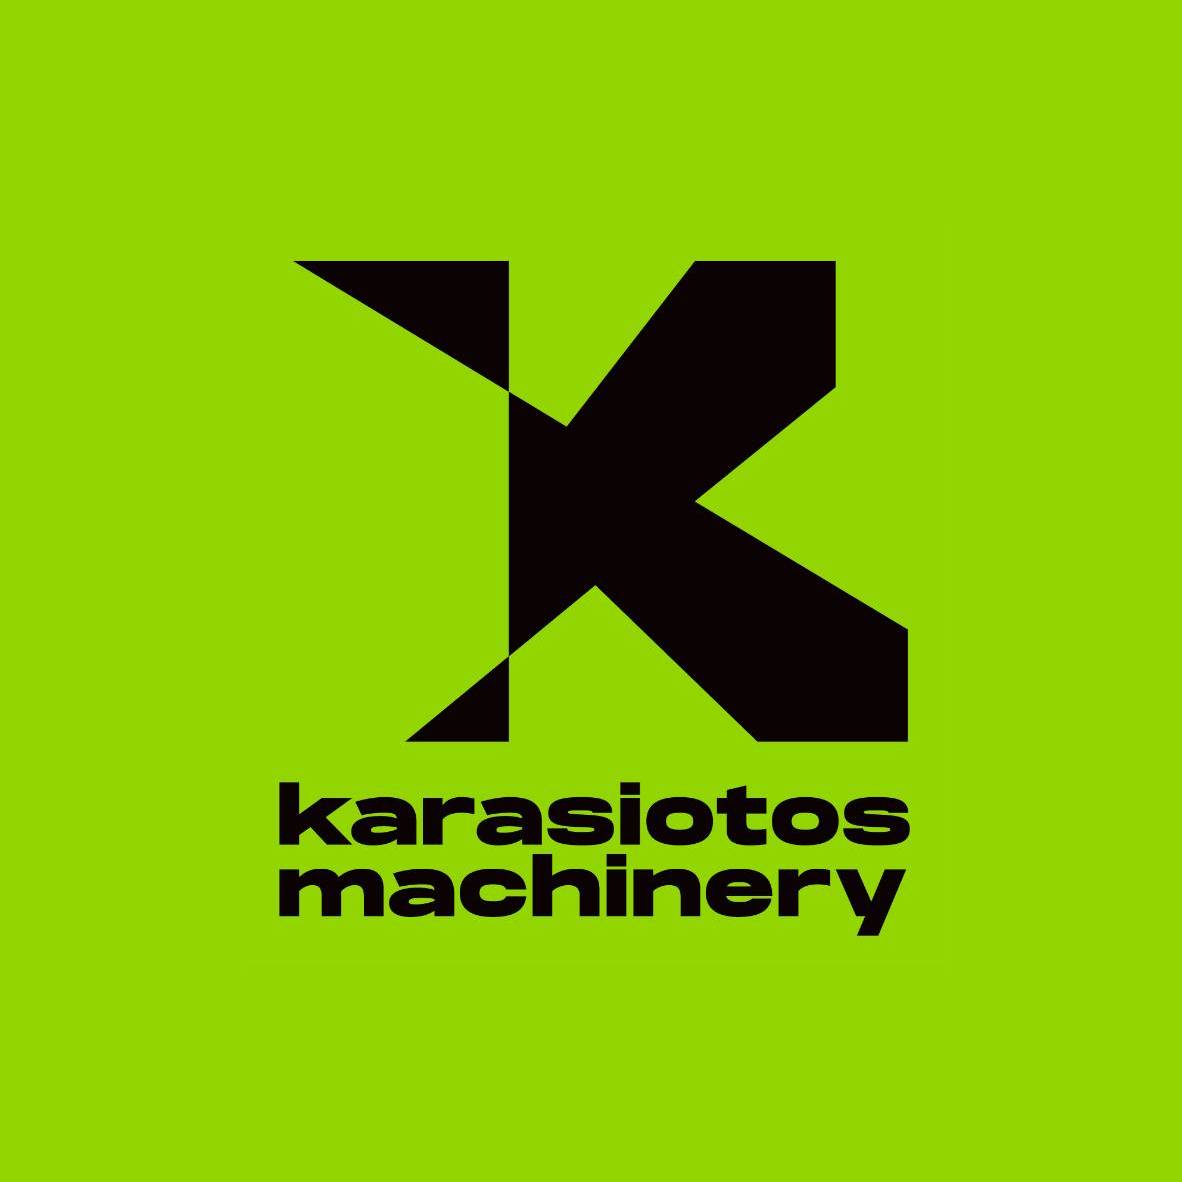 karasiotos machines